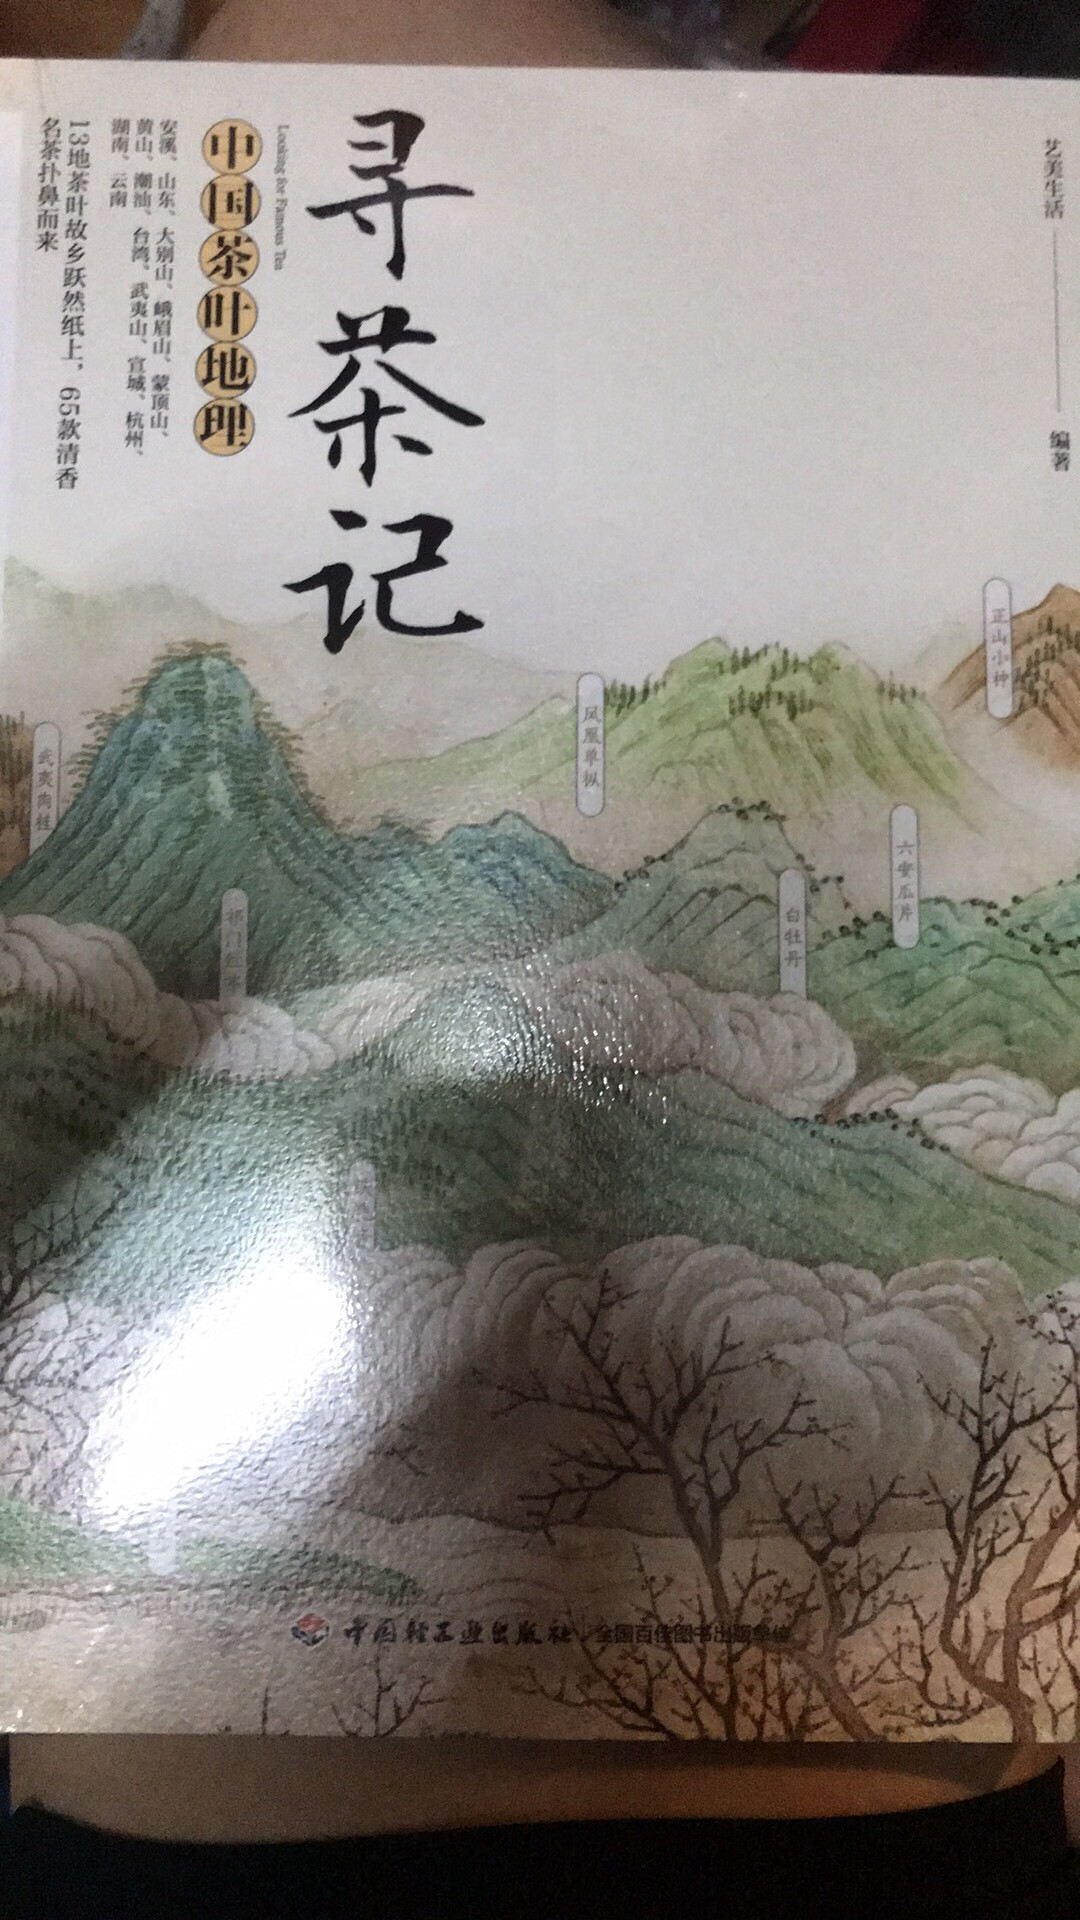 封面设计很清新，这本书讲中国茶叶地理的，讲述很多中国茗茶，可以让自己学到一些关于茶的知识和文化，对于爱茶的人，我想也是一本好书吧。